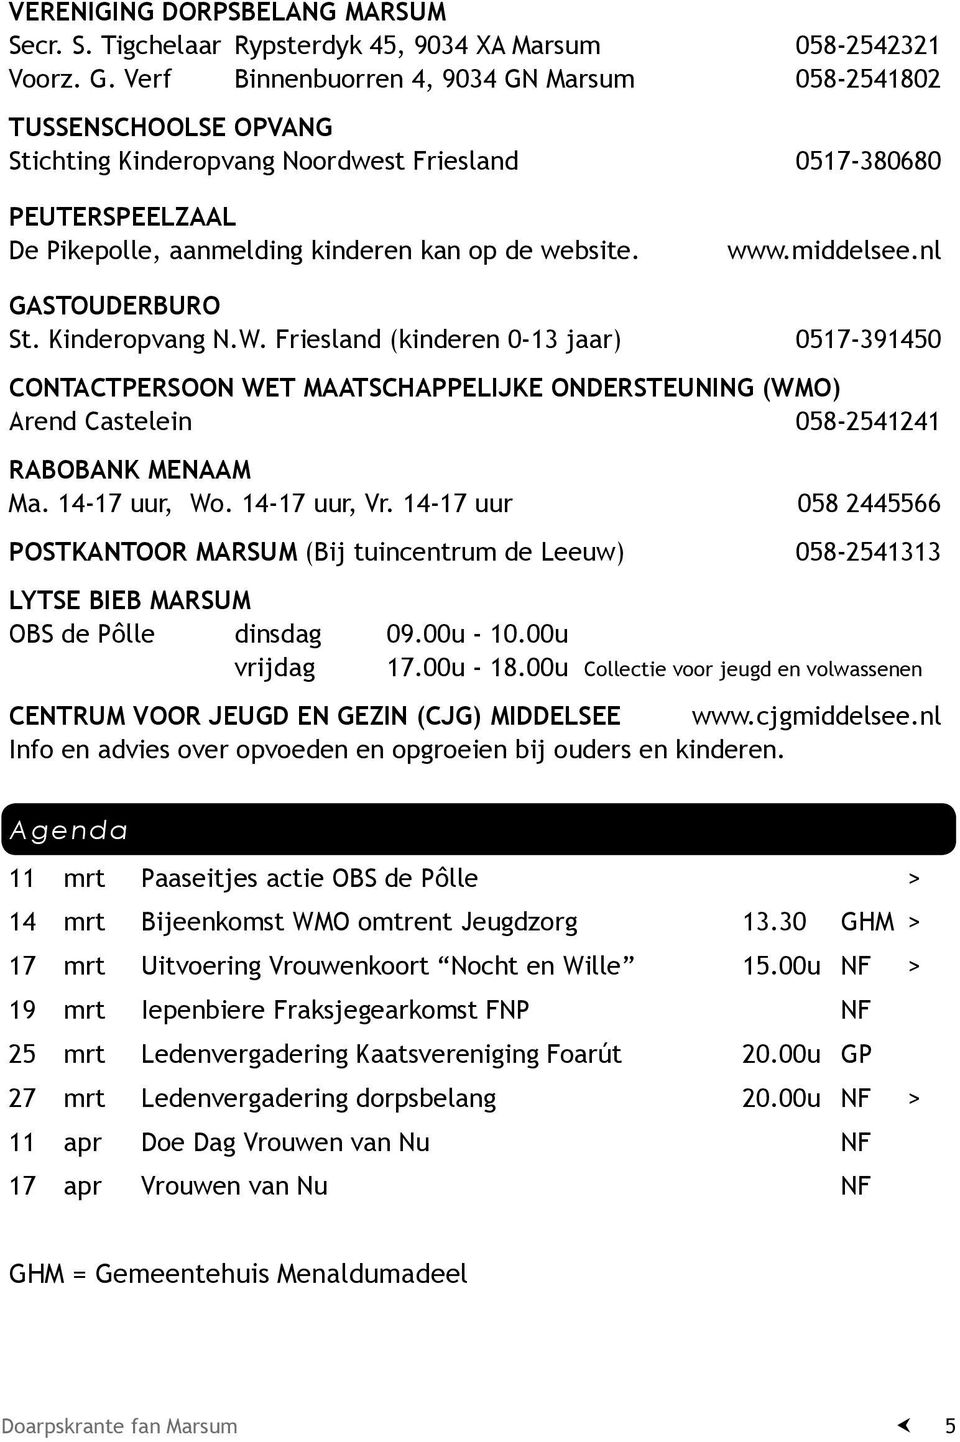 middelsee.nl Gastouderburo St. Kinderopvang N.W. Friesland (kinderen 0-13 jaar) 0517-391450 Contactpersoon Wet Maatschappelijke Ondersteuning (WMO) Arend Castelein 058-2541241 Rabobank menaam Ma.